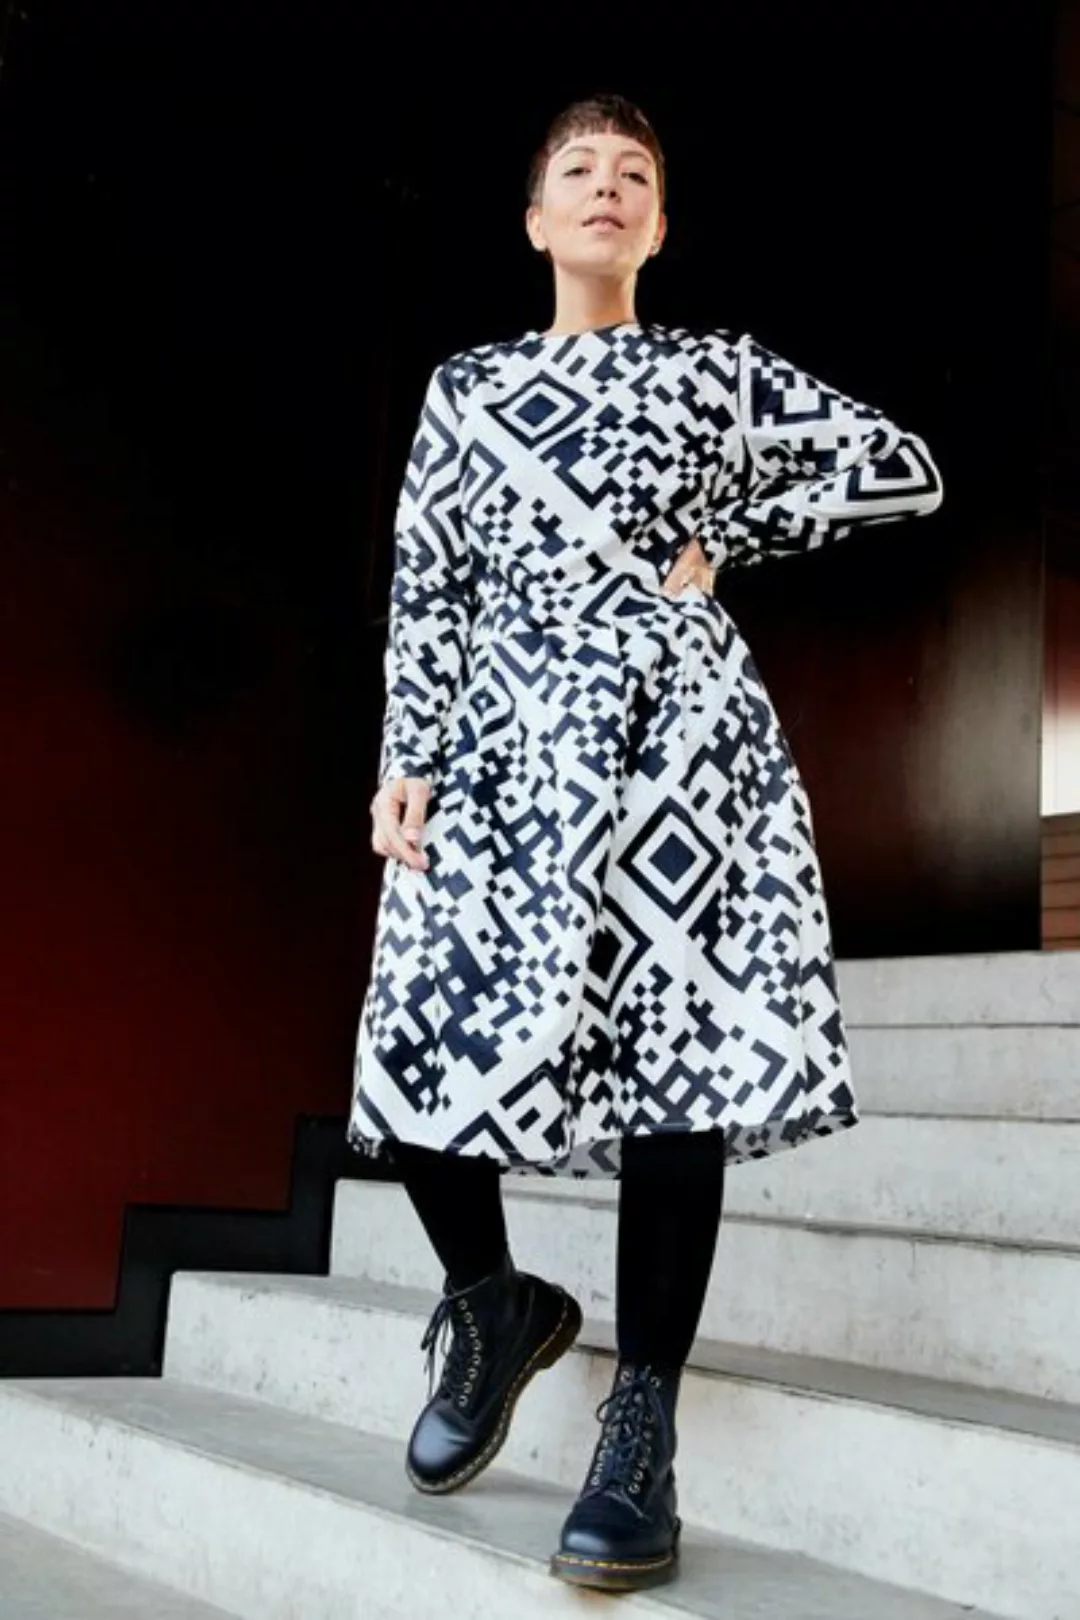 Dress Eve Qr - Damenkleid Aus Bio-baumwolle günstig online kaufen